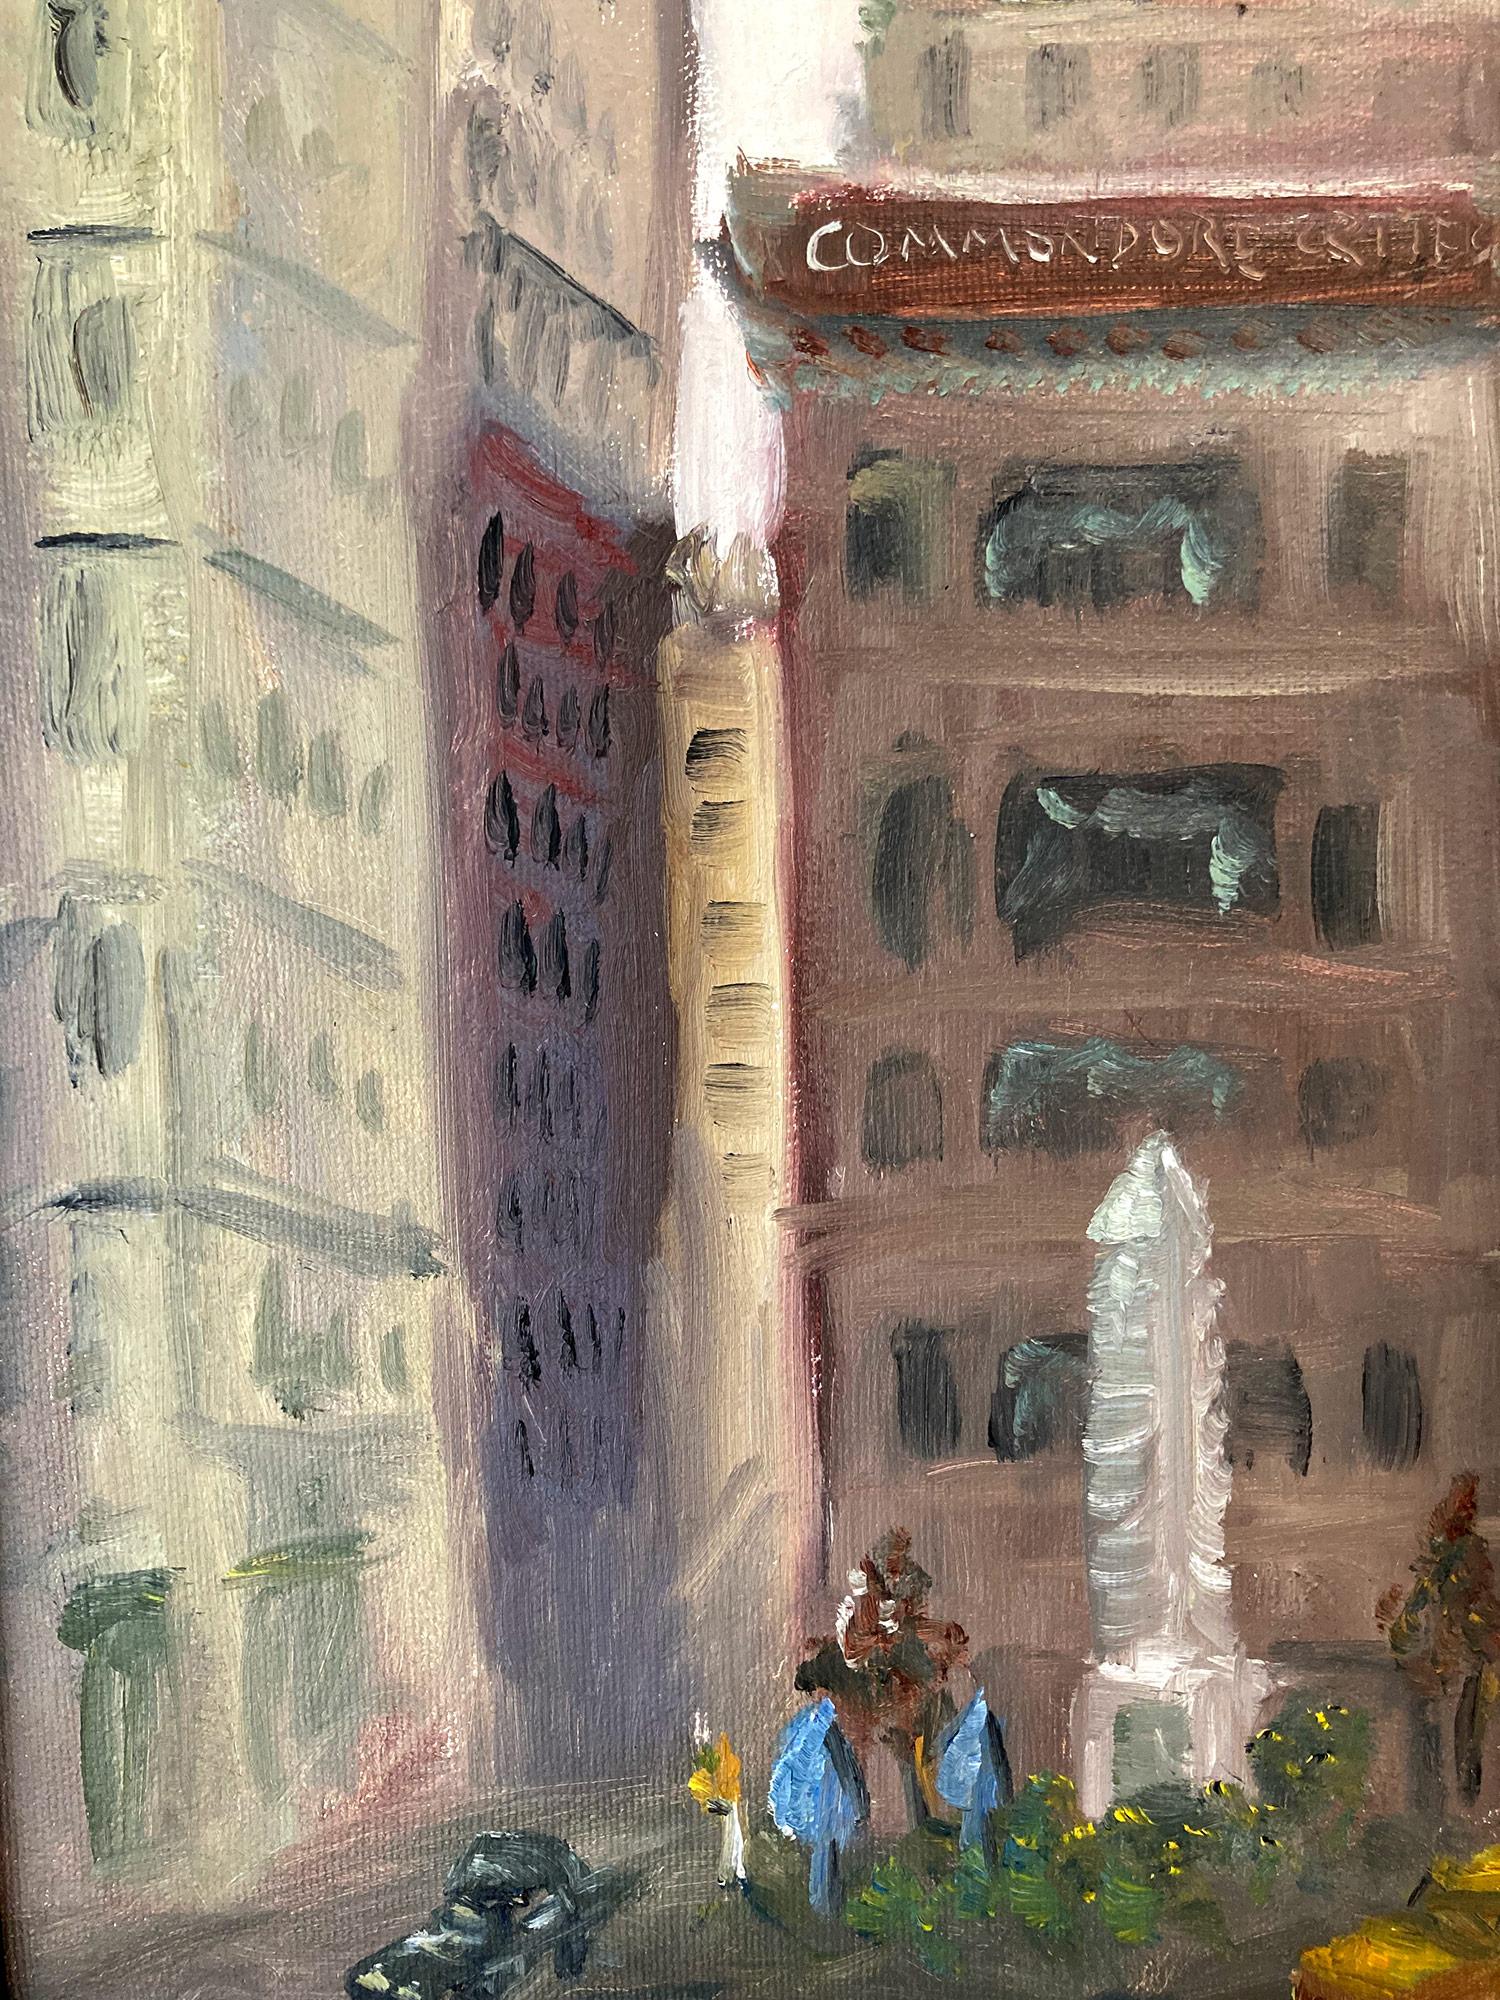 Cette peinture représente une scène impressionniste de la ville de New York de l'Empire State Building depuis Madison Square Park et la 5e Avenue en été, lors d'une journée animée avec des voitures dans les rues. Ce tableau a été peint à vue par